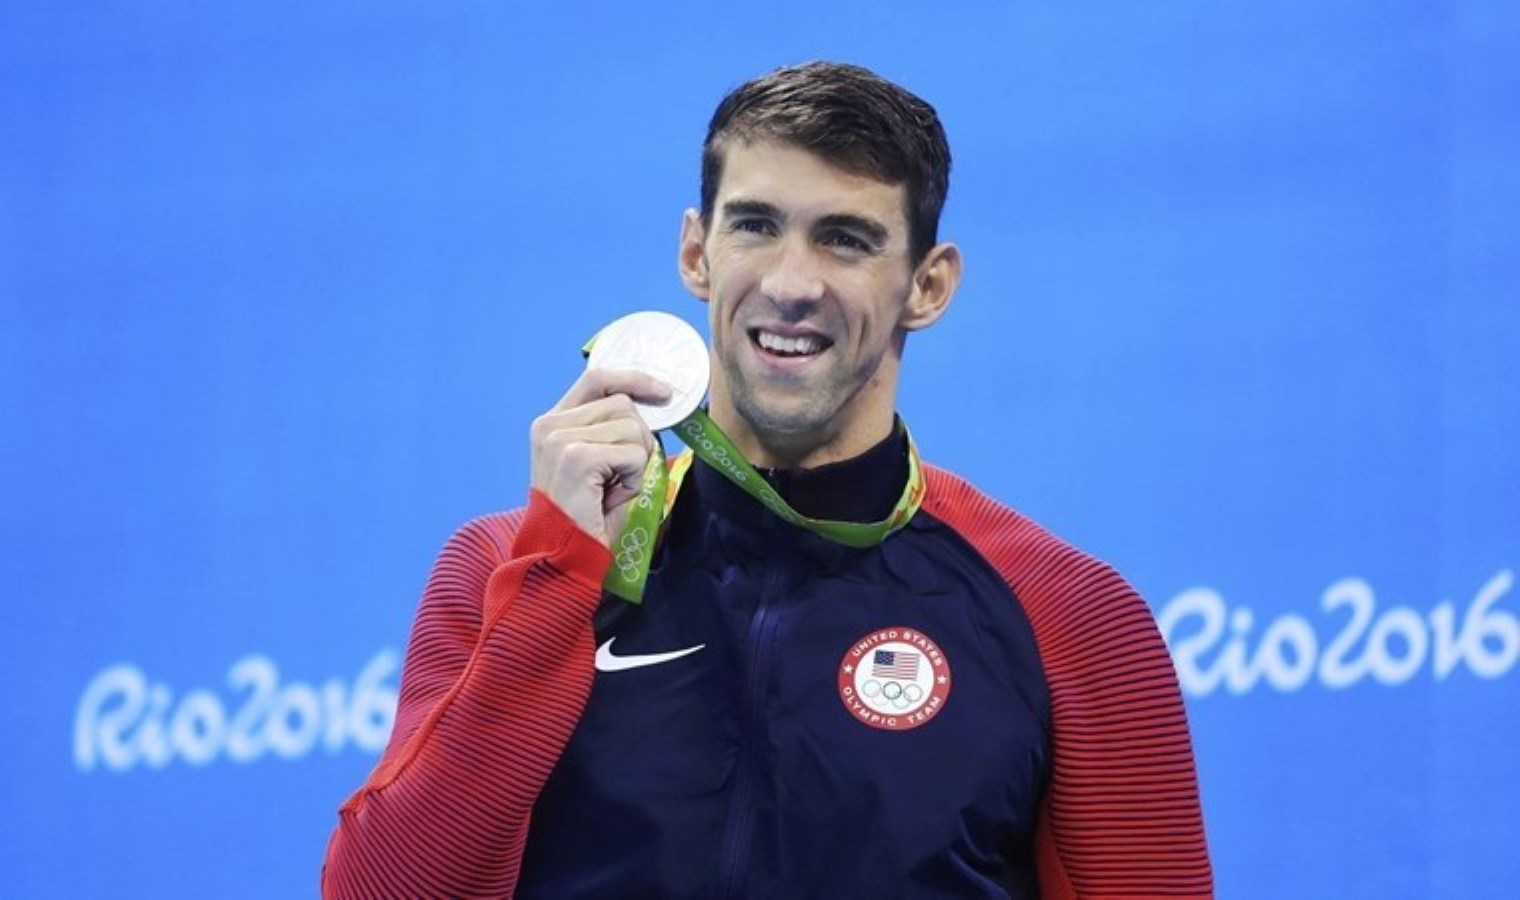 Olimpiyatların ‘kralı’ Michael Phelps